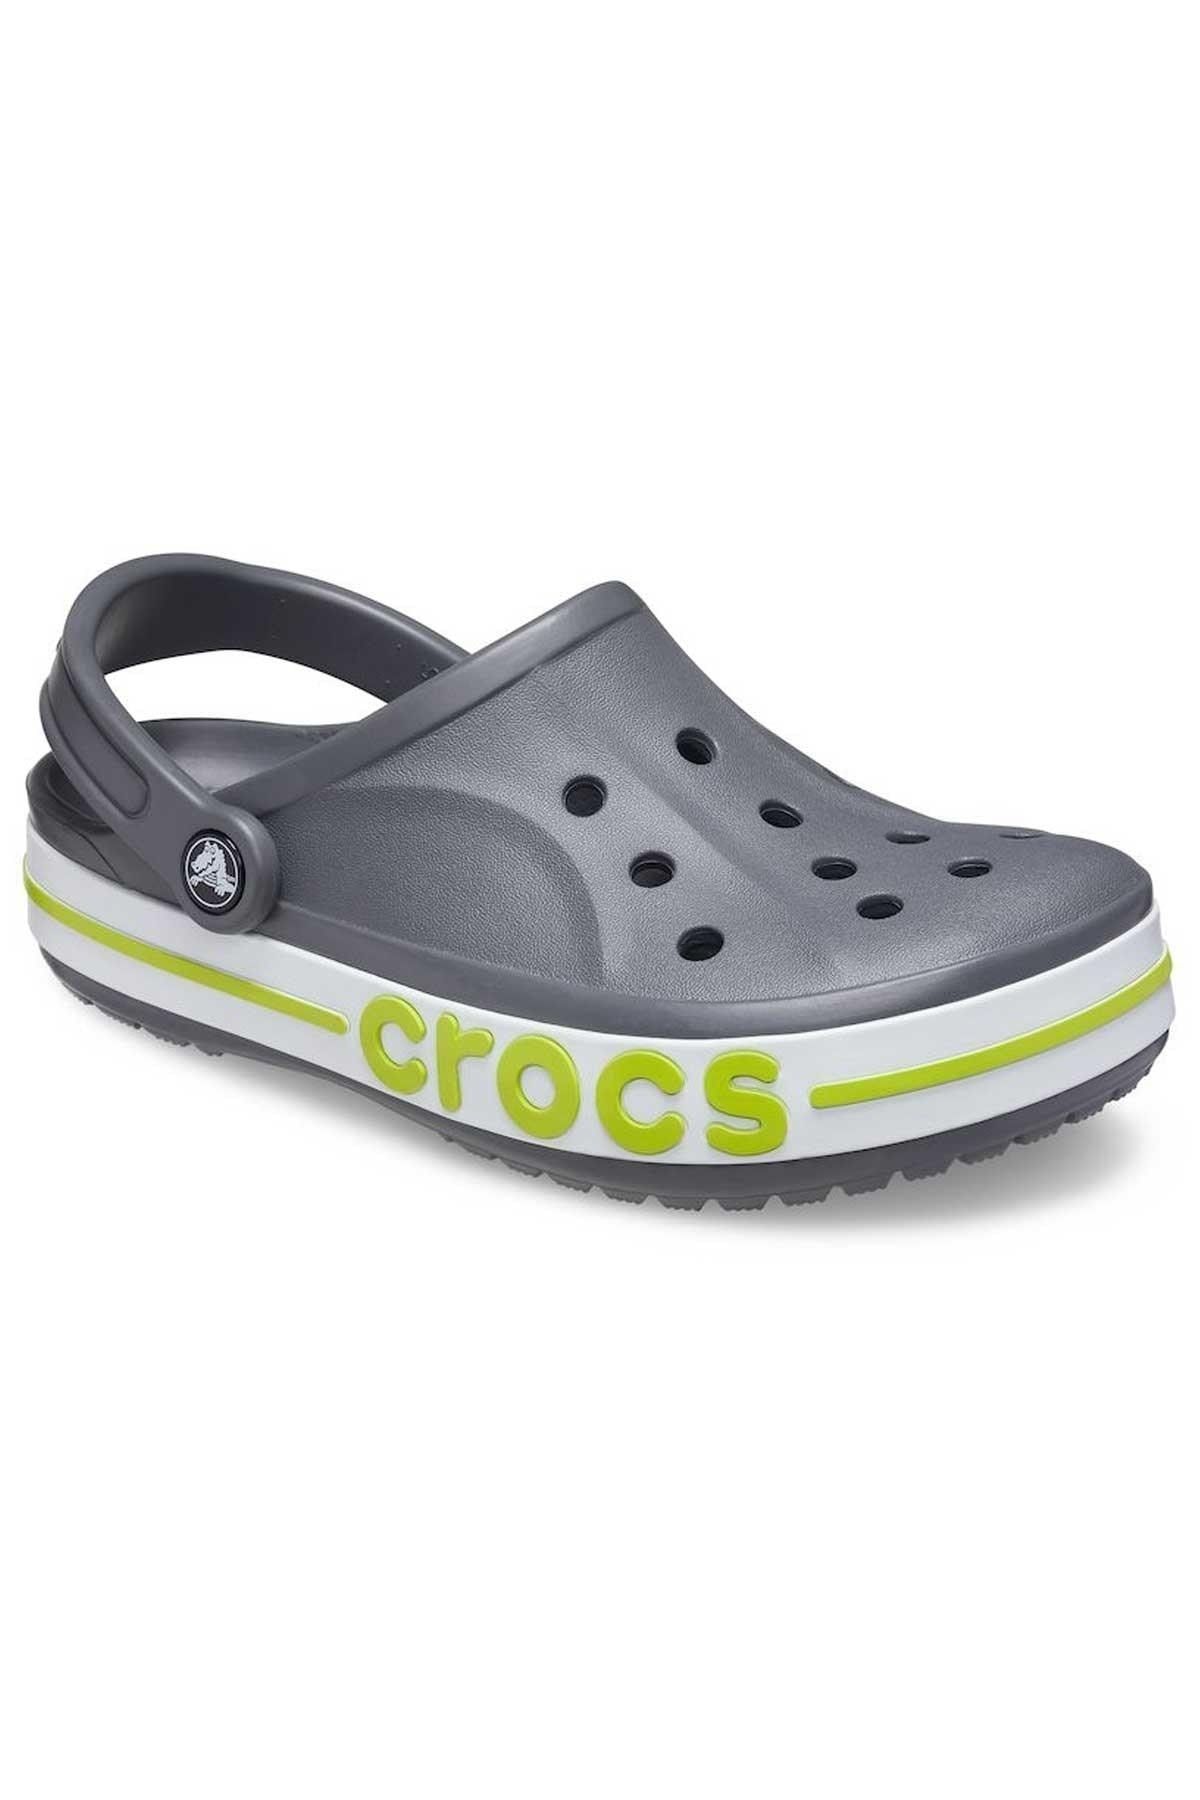 Crocs 205089-0gx Bayaband Clog Spor Terlik Sandalet